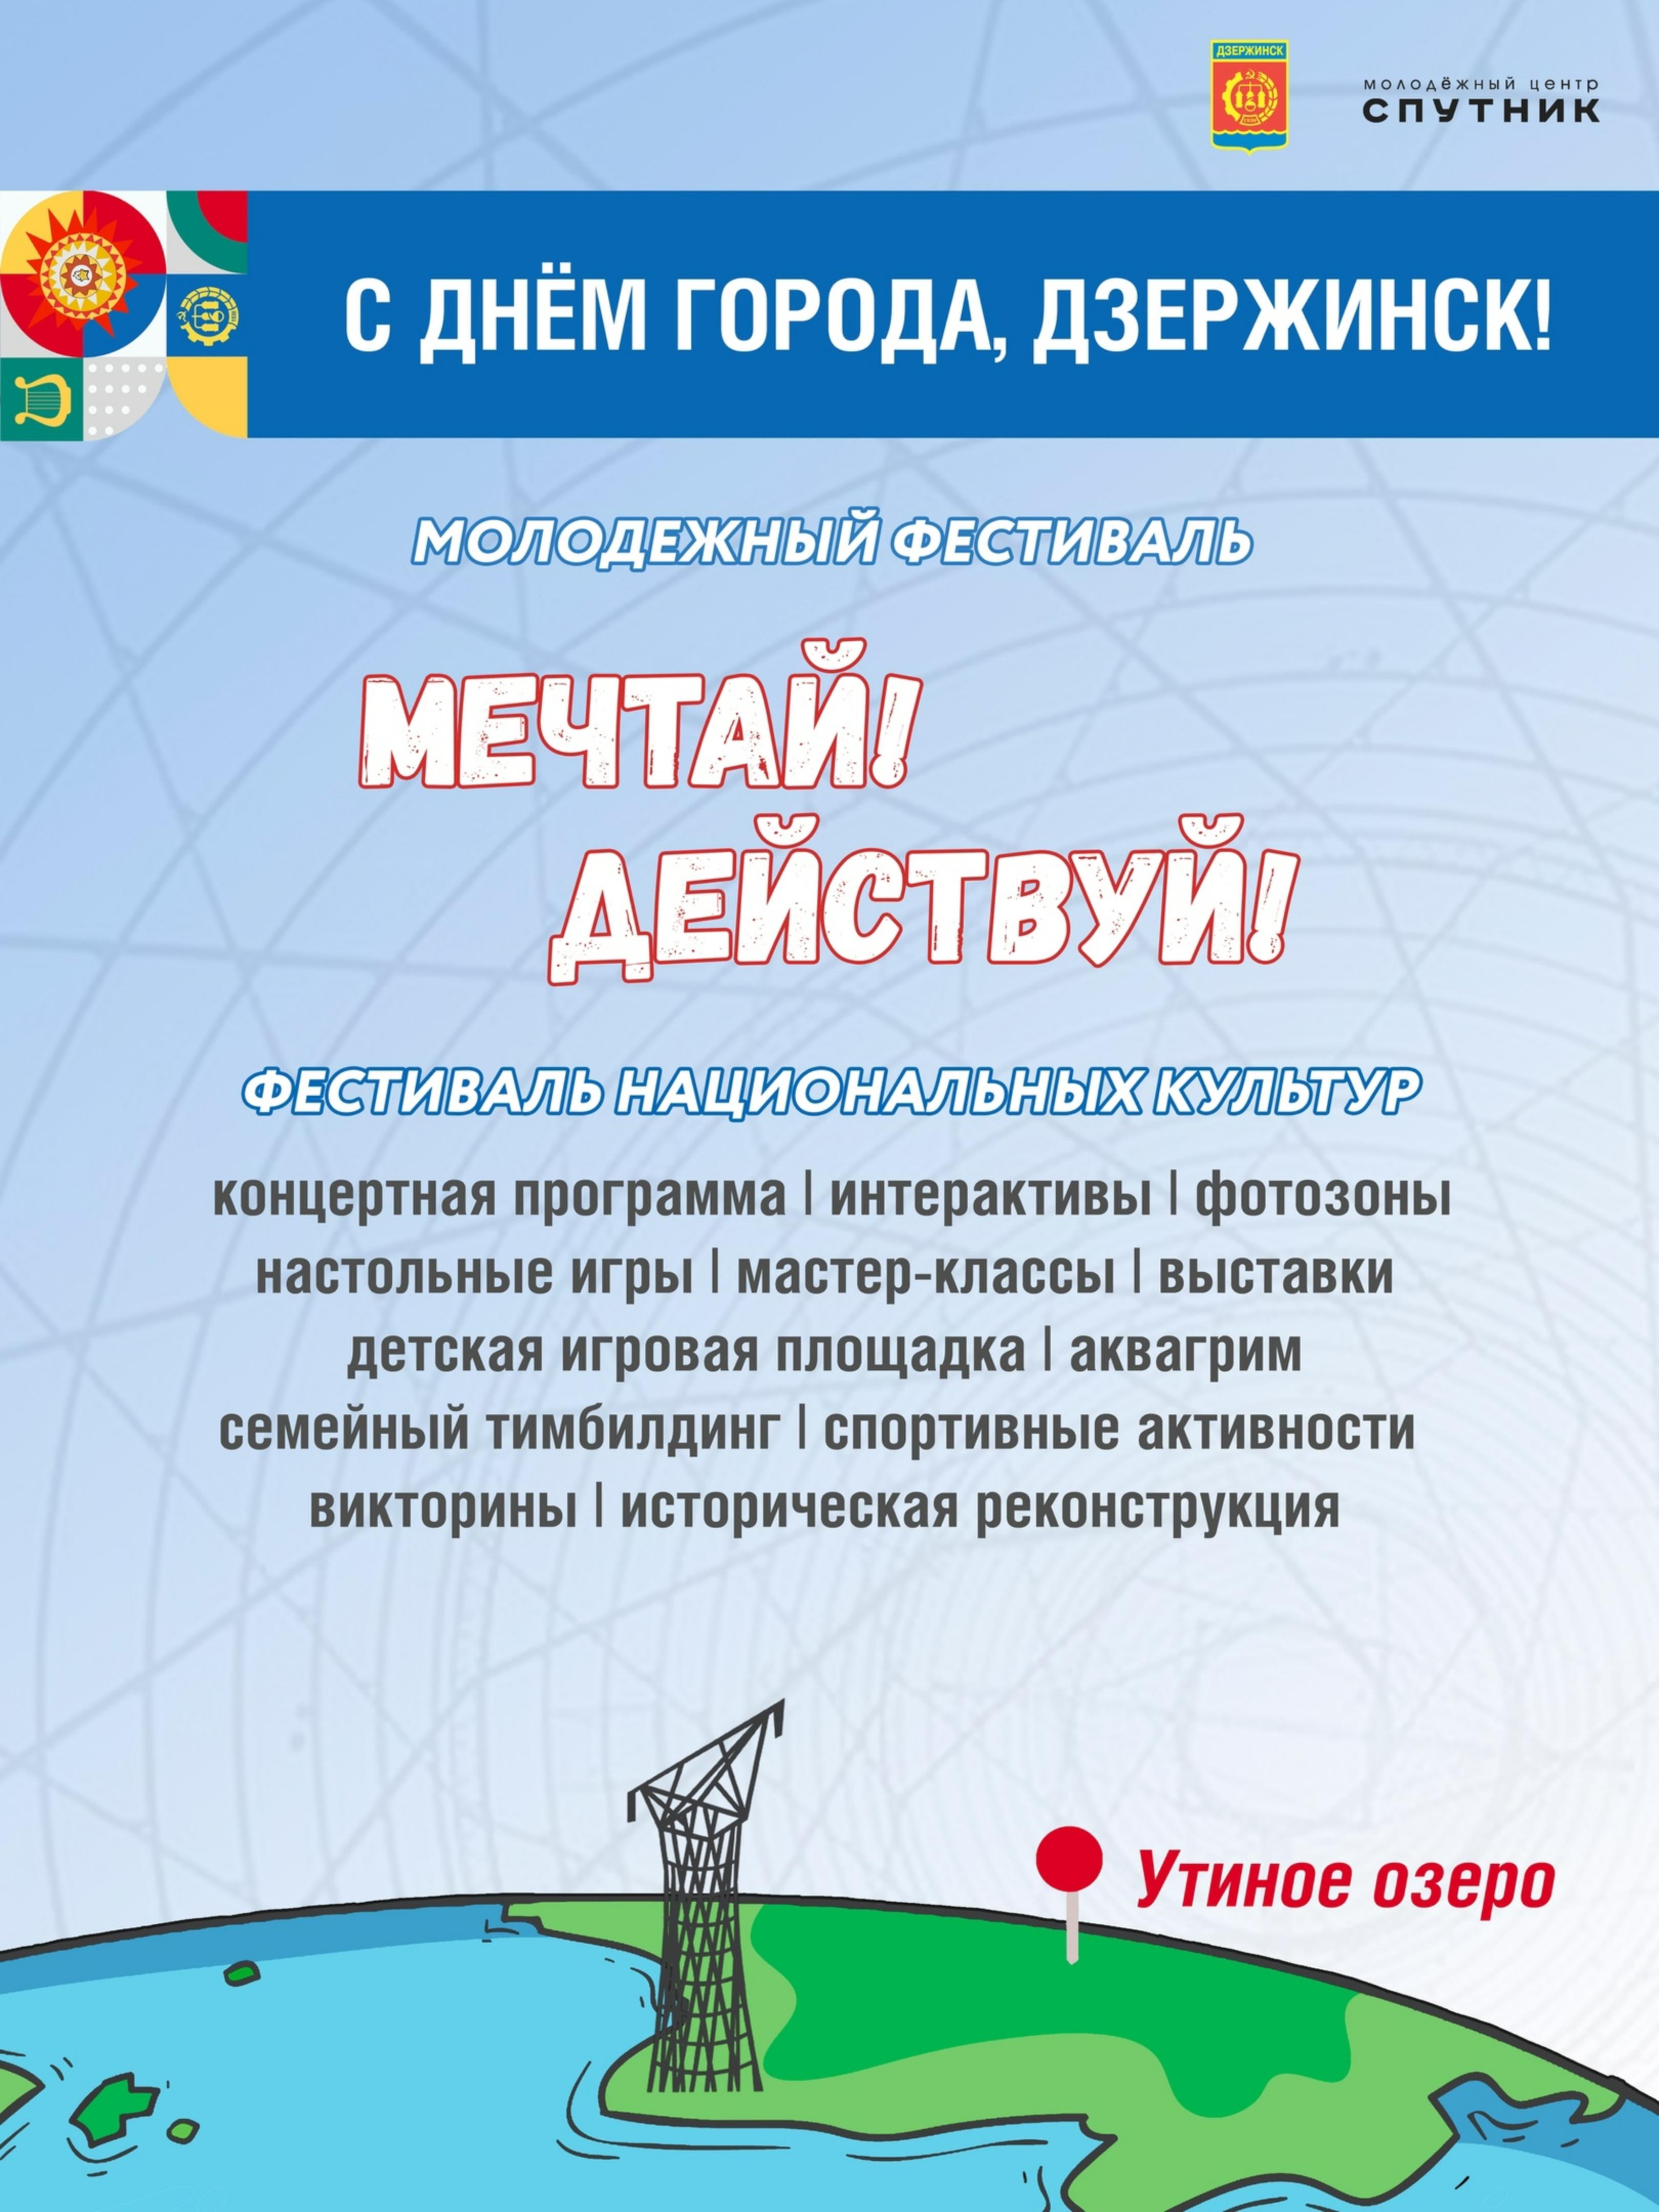 Молодежный фестиваль «Мечтай! Действуй!» пройдет в Дзержинске в День города